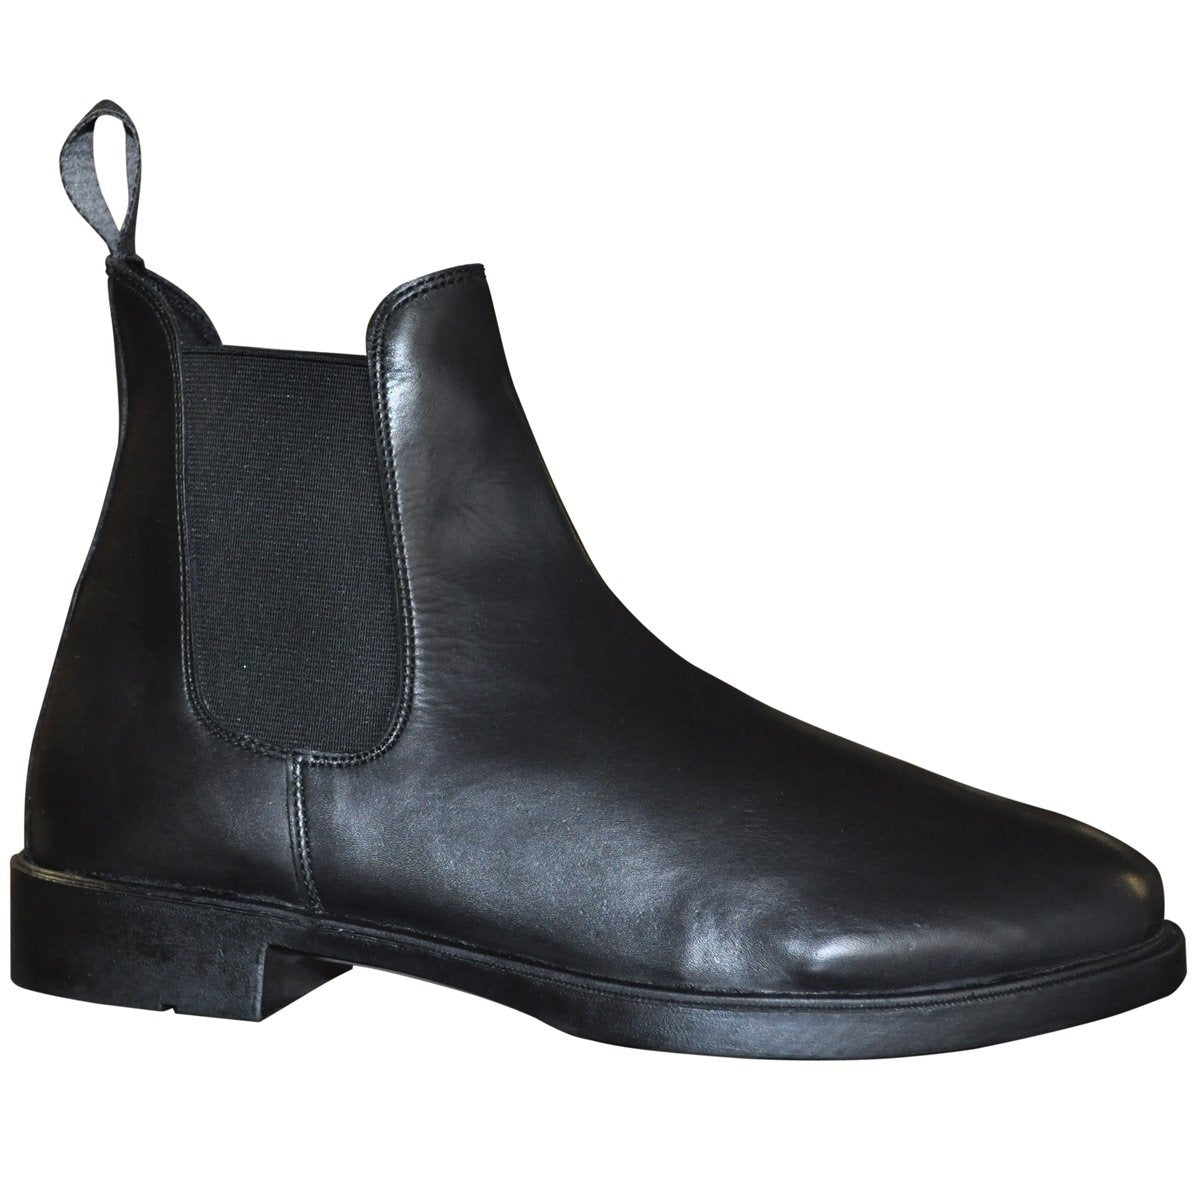 Boots d'équitation Canter Tivoli noire